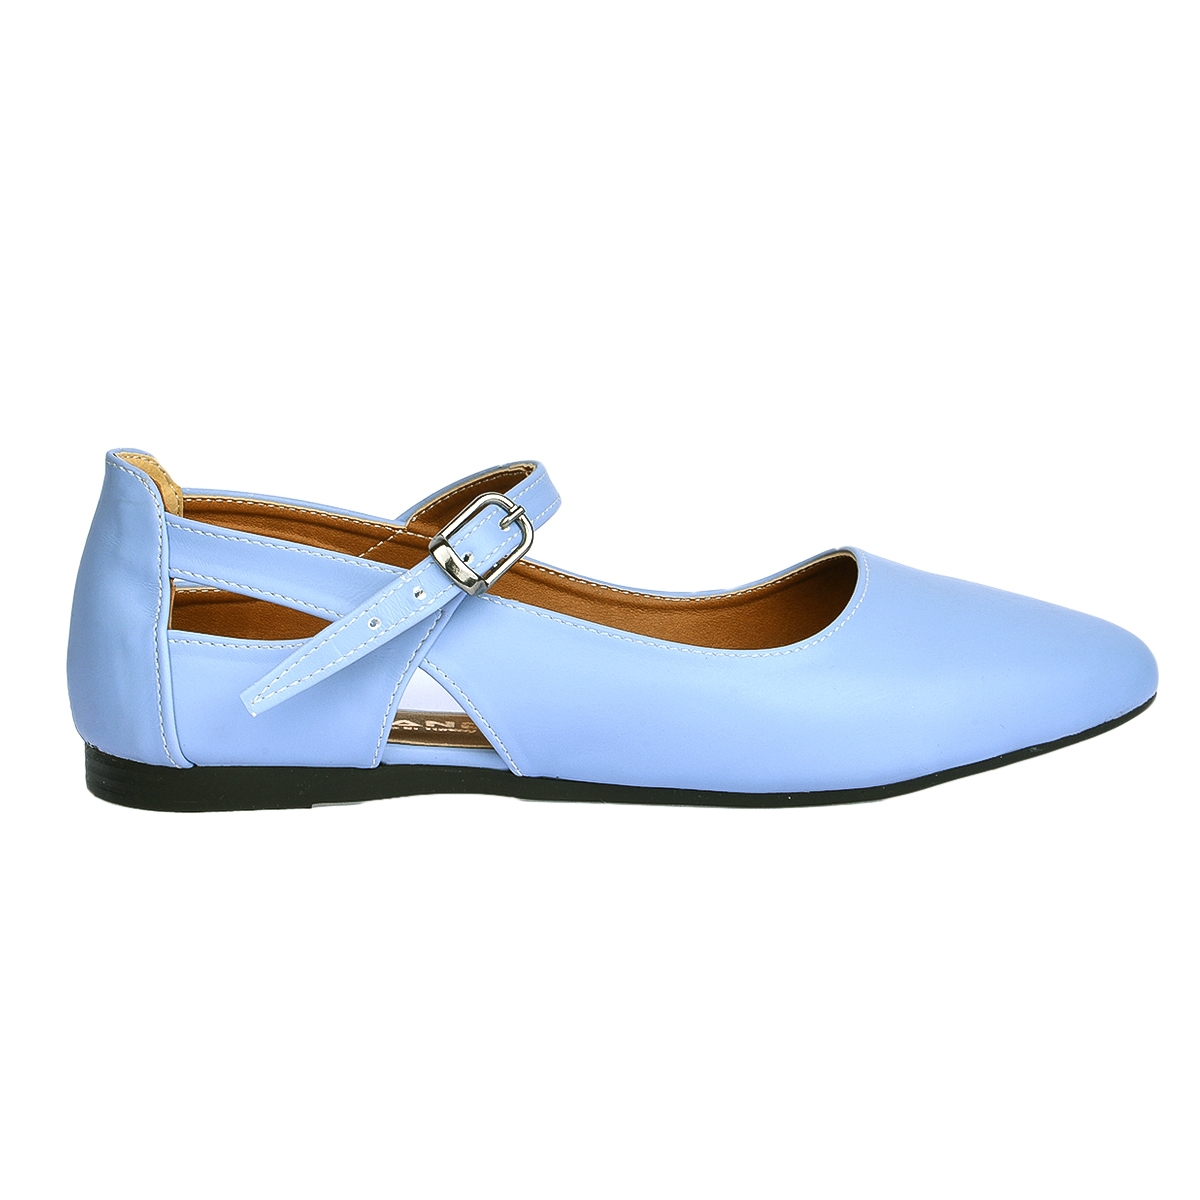 Flo 1920-201 Günlük Sandalet Kadın Cilt Babet Ayakkabı Mavi. 1